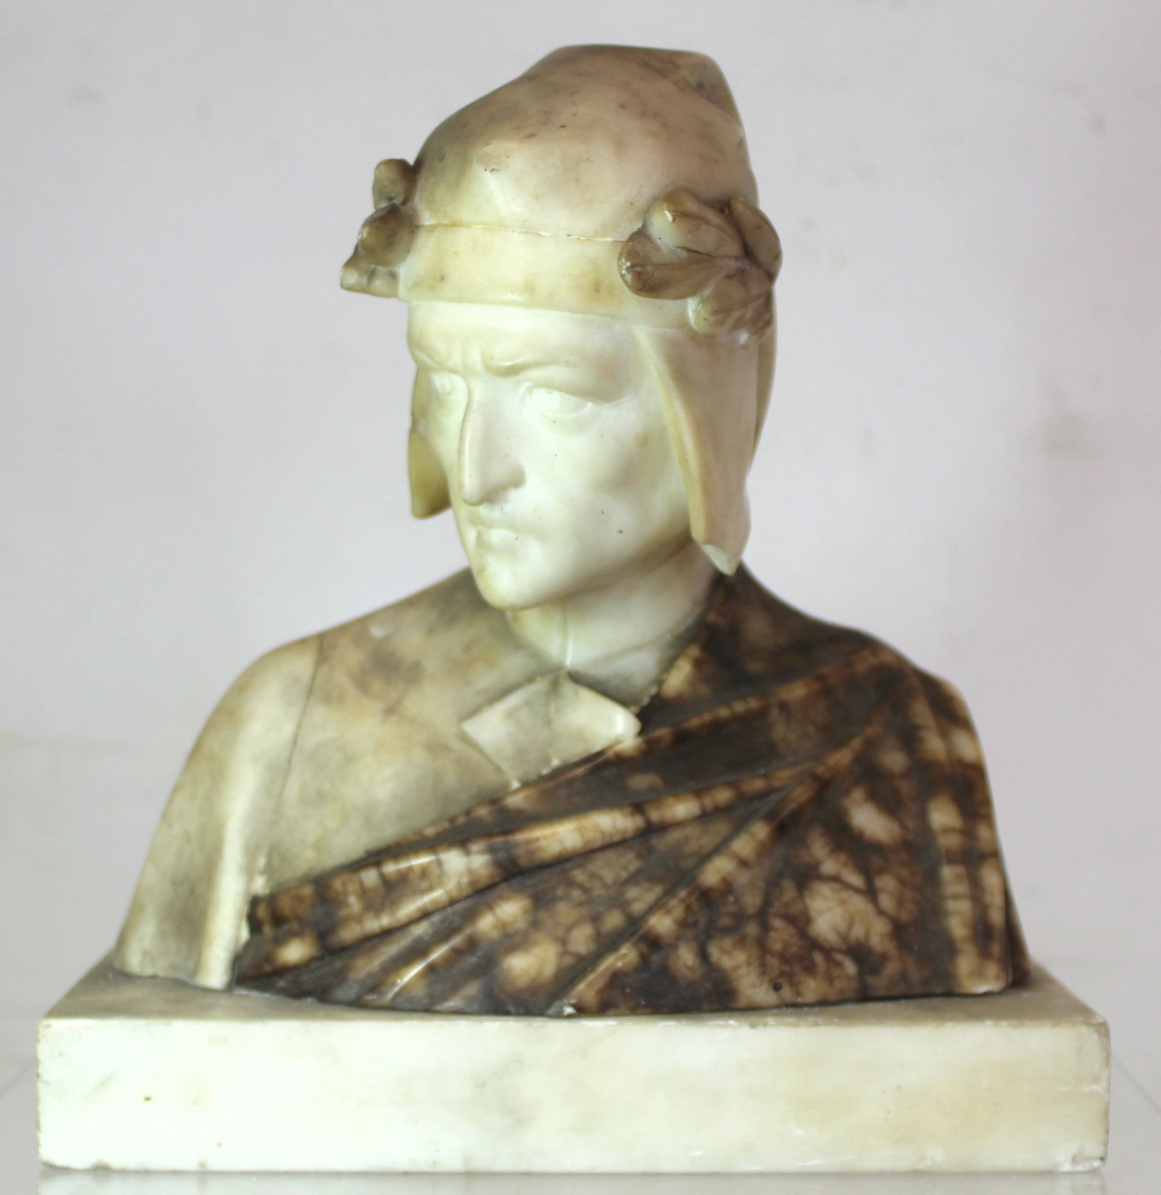 Antique carved alabaster bust of Dante on rectangular plinth base (detached), 23cm high.